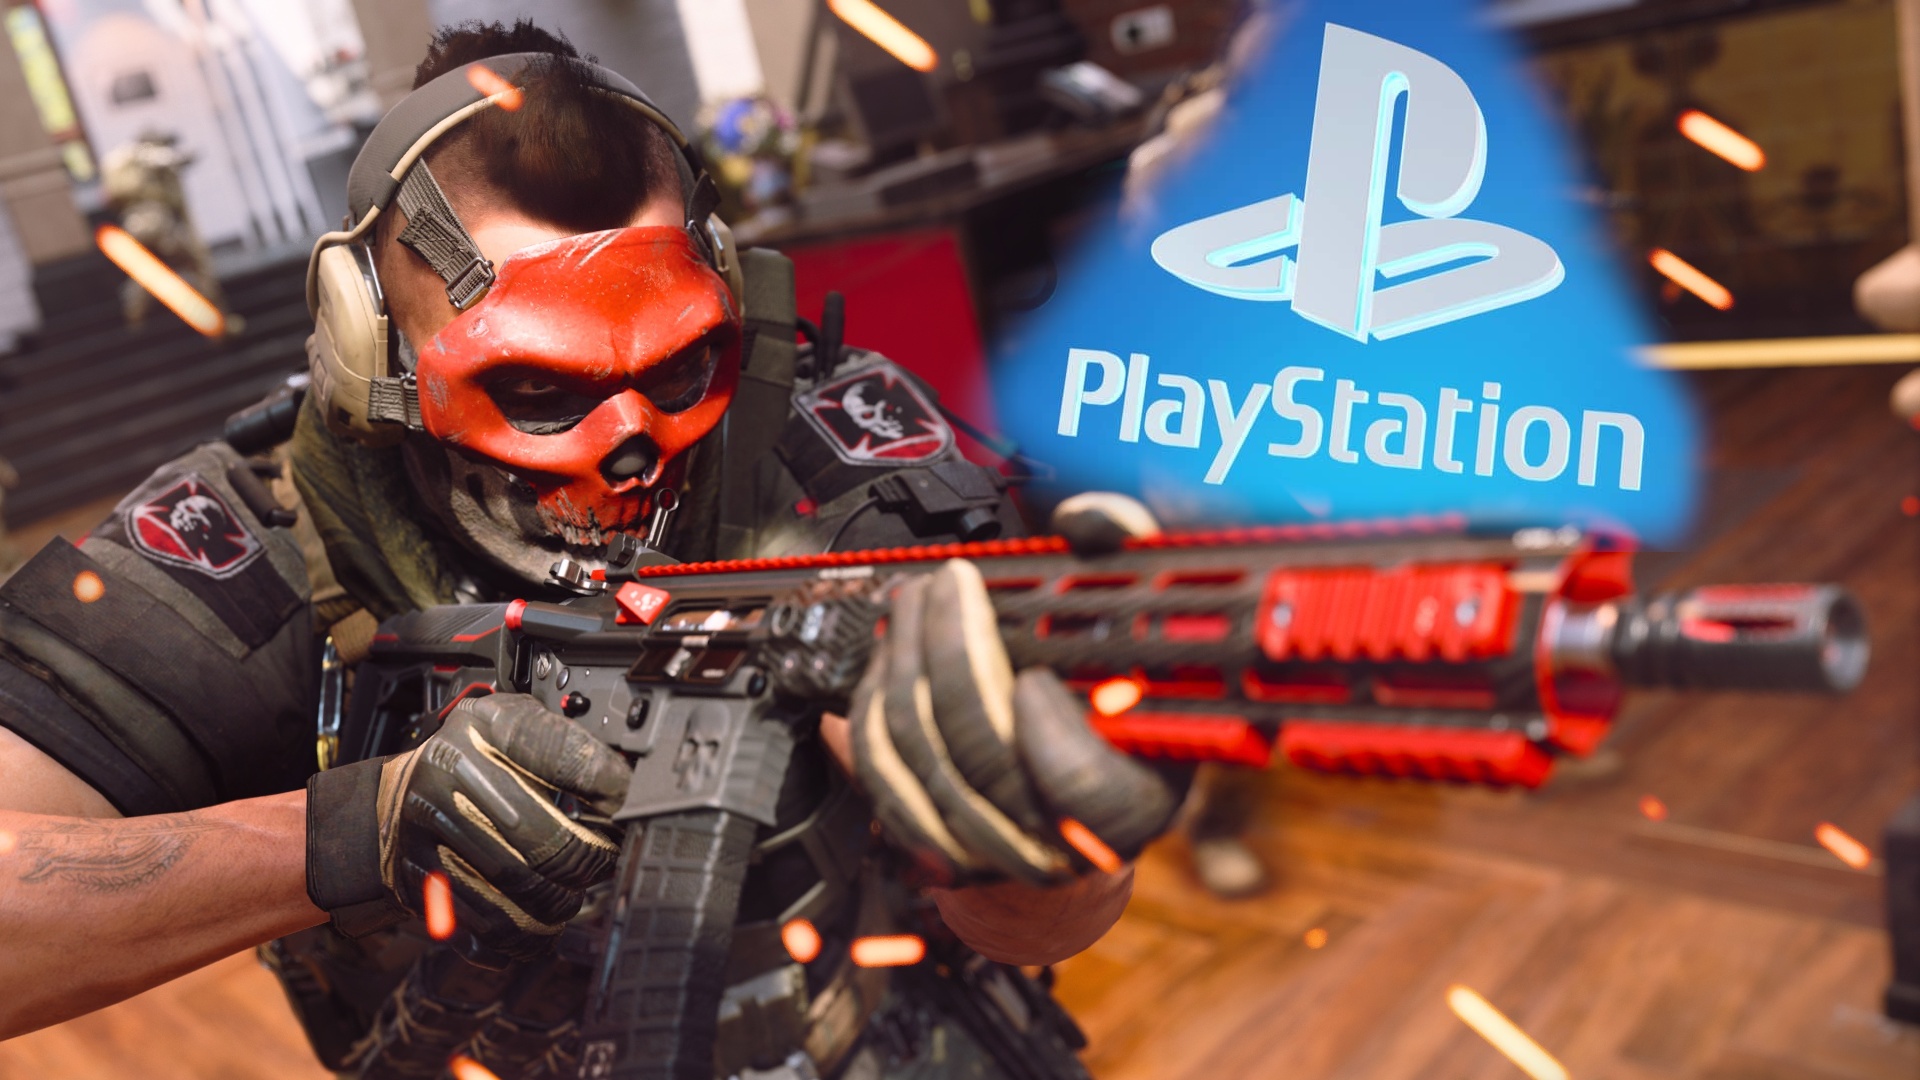 #Sony behauptet: Microsoft könnte CoD für PlayStation absichtlich schlechter machen